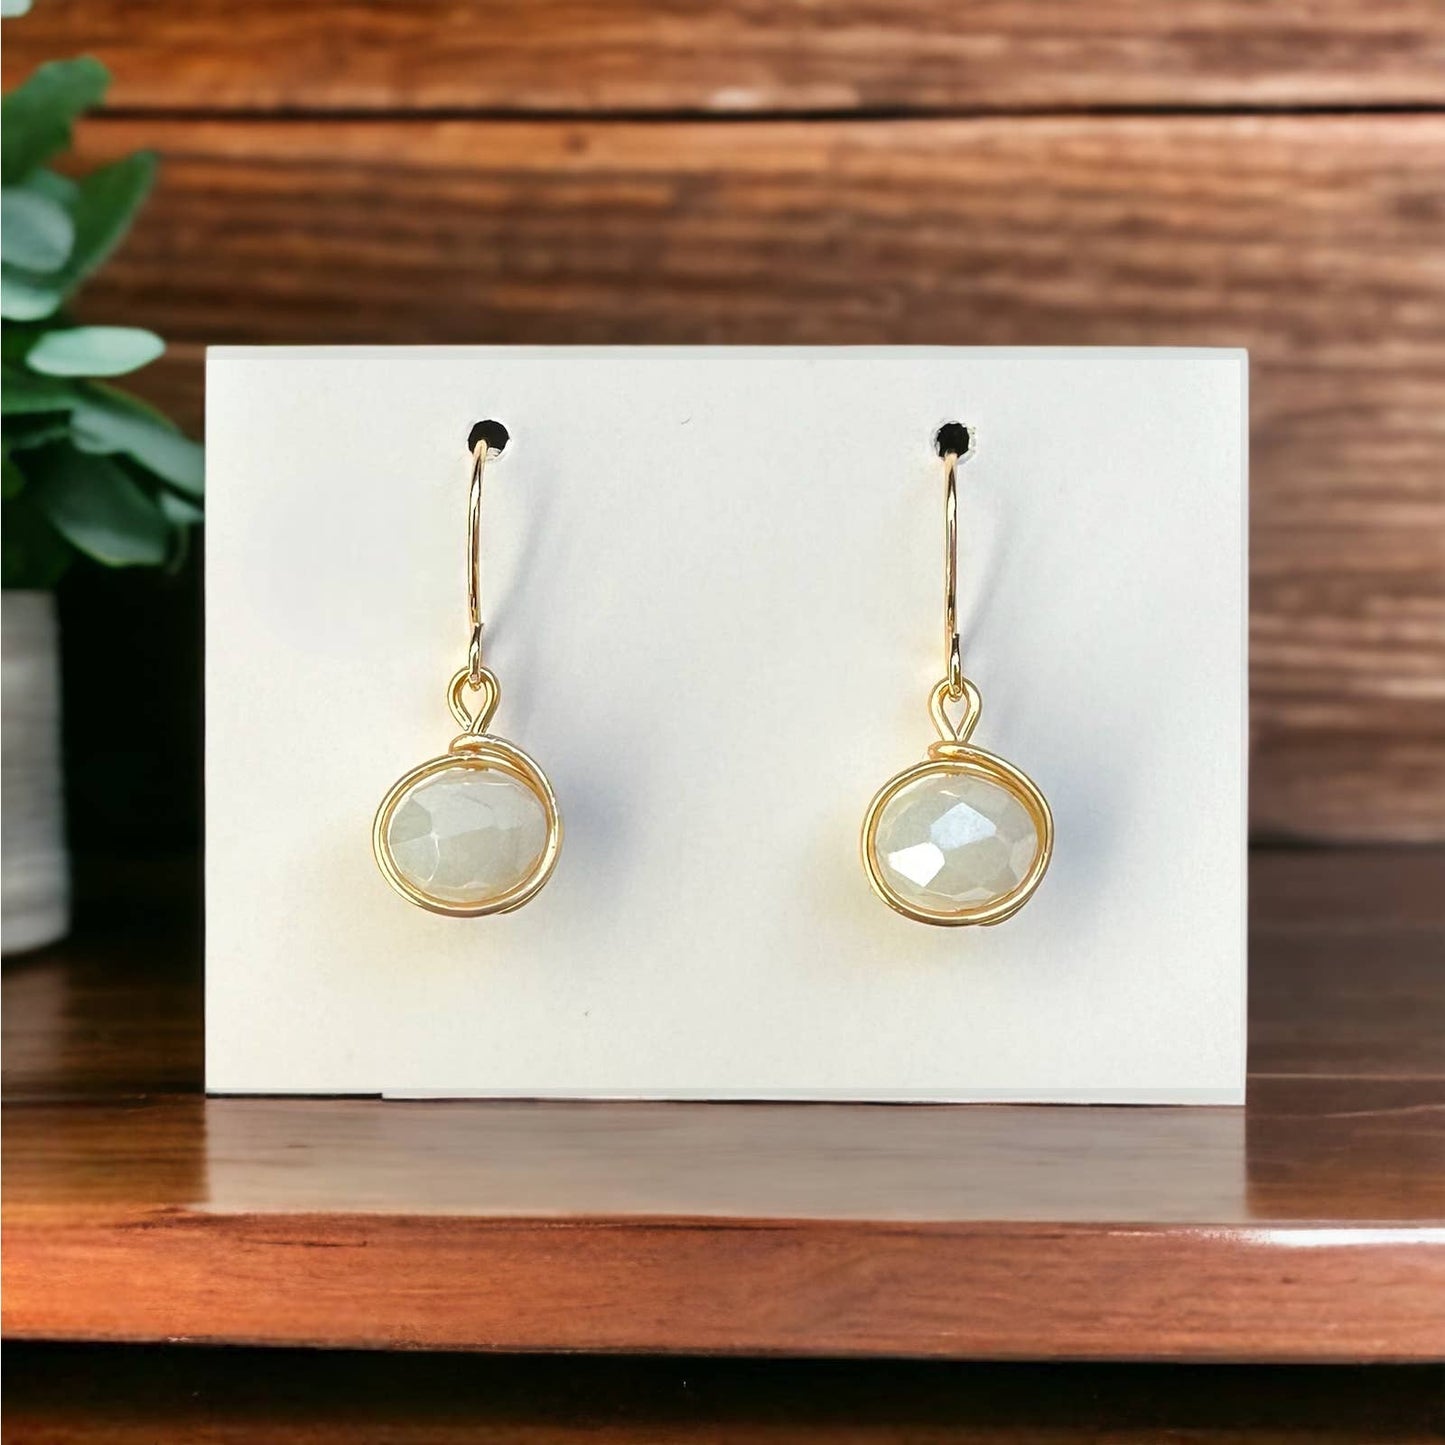 Handmade Elegant White Glass Bead Earrings - 14K Gold Plated, Minimalist Design